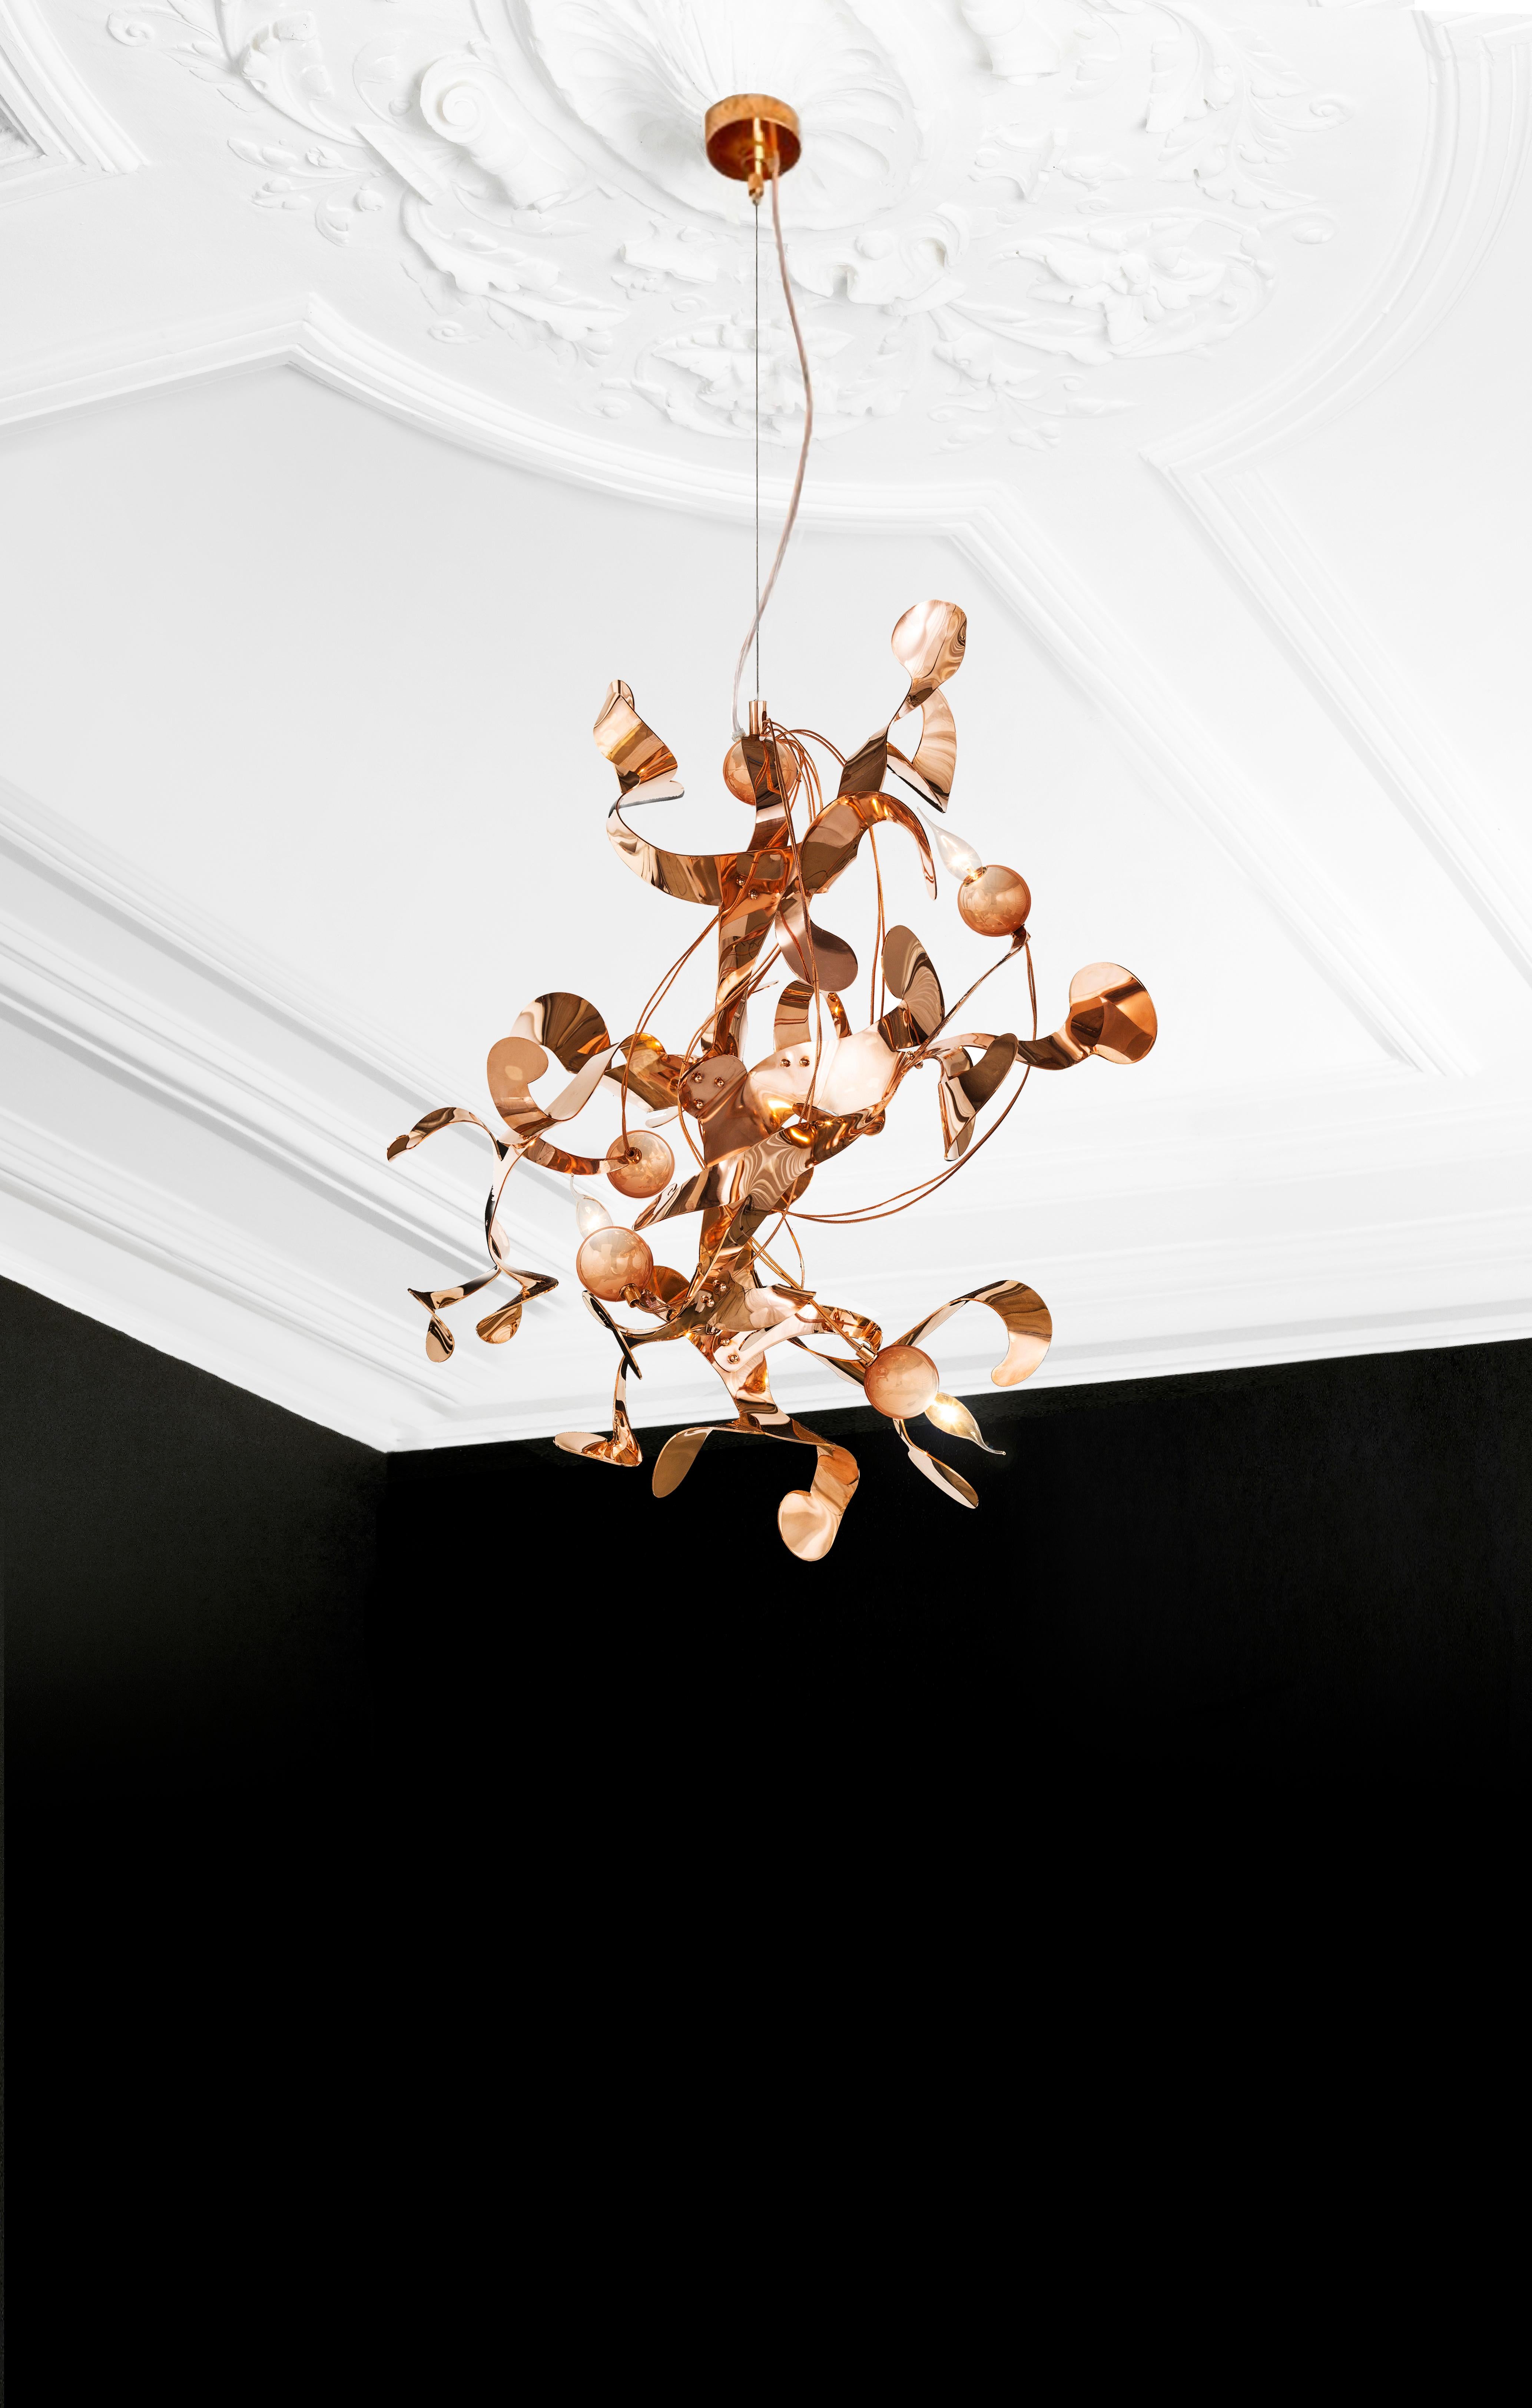 La suspension moderne Kelp en finition cuivre, conçue par William Brand, est une sculpture lumineuse organique libre et ludique de la Collectional Design/One. Le caractère apparemment aléatoire de la sculpture lumineuse, mais les ornements